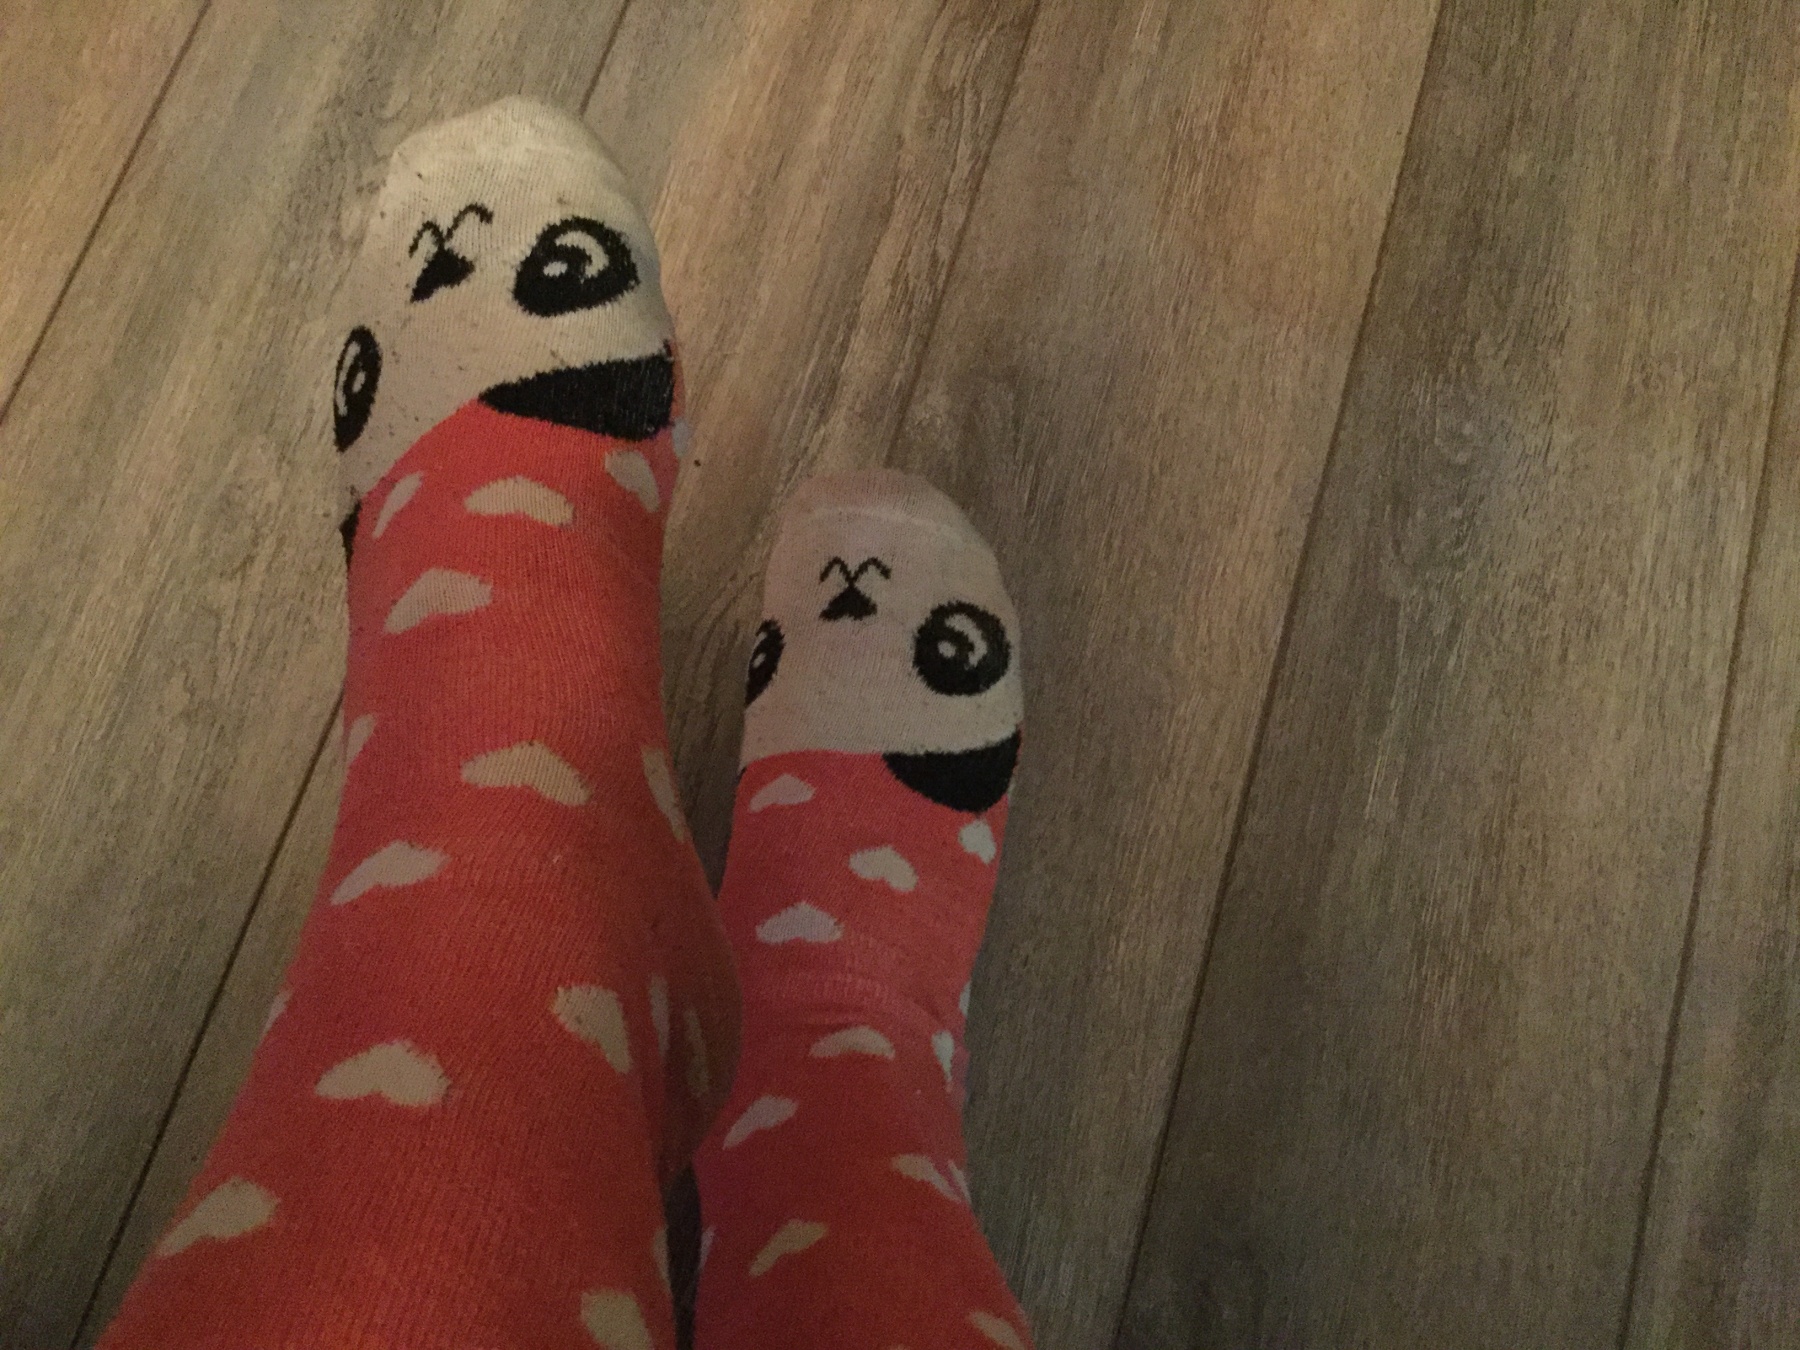 Cute pink panda 🐼 socks!